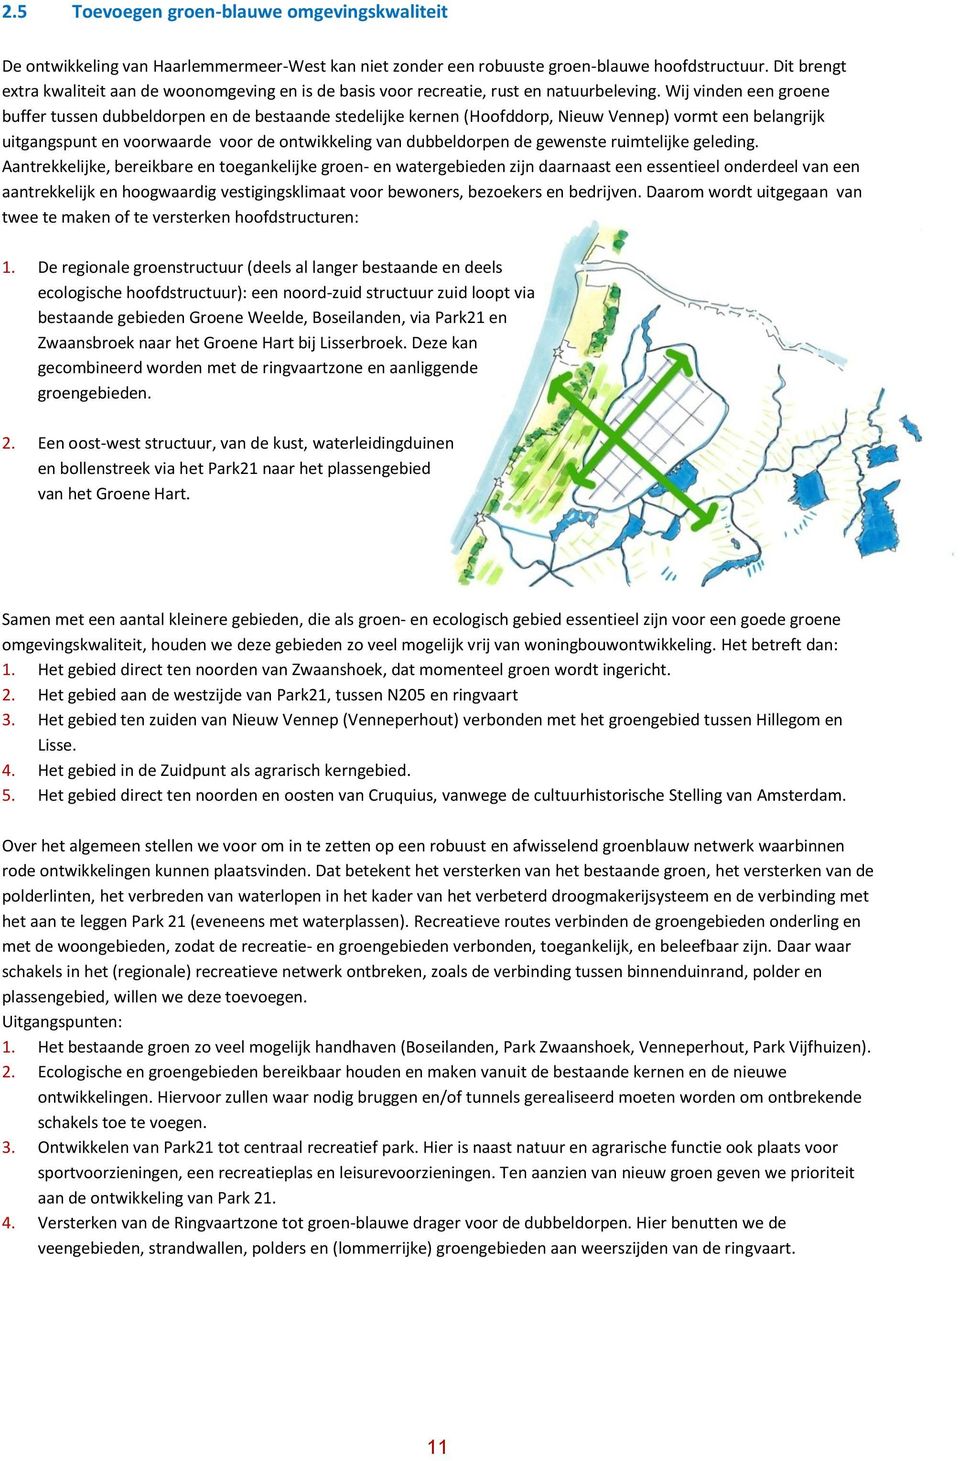 Wij vinden een groene buffer tussen dubbeldorpen en de bestaande stedelijke kernen (Hoofddorp, Nieuw Vennep) vormt een belangrijk uitgangspunt en voorwaarde voor de ontwikkeling van dubbeldorpen de